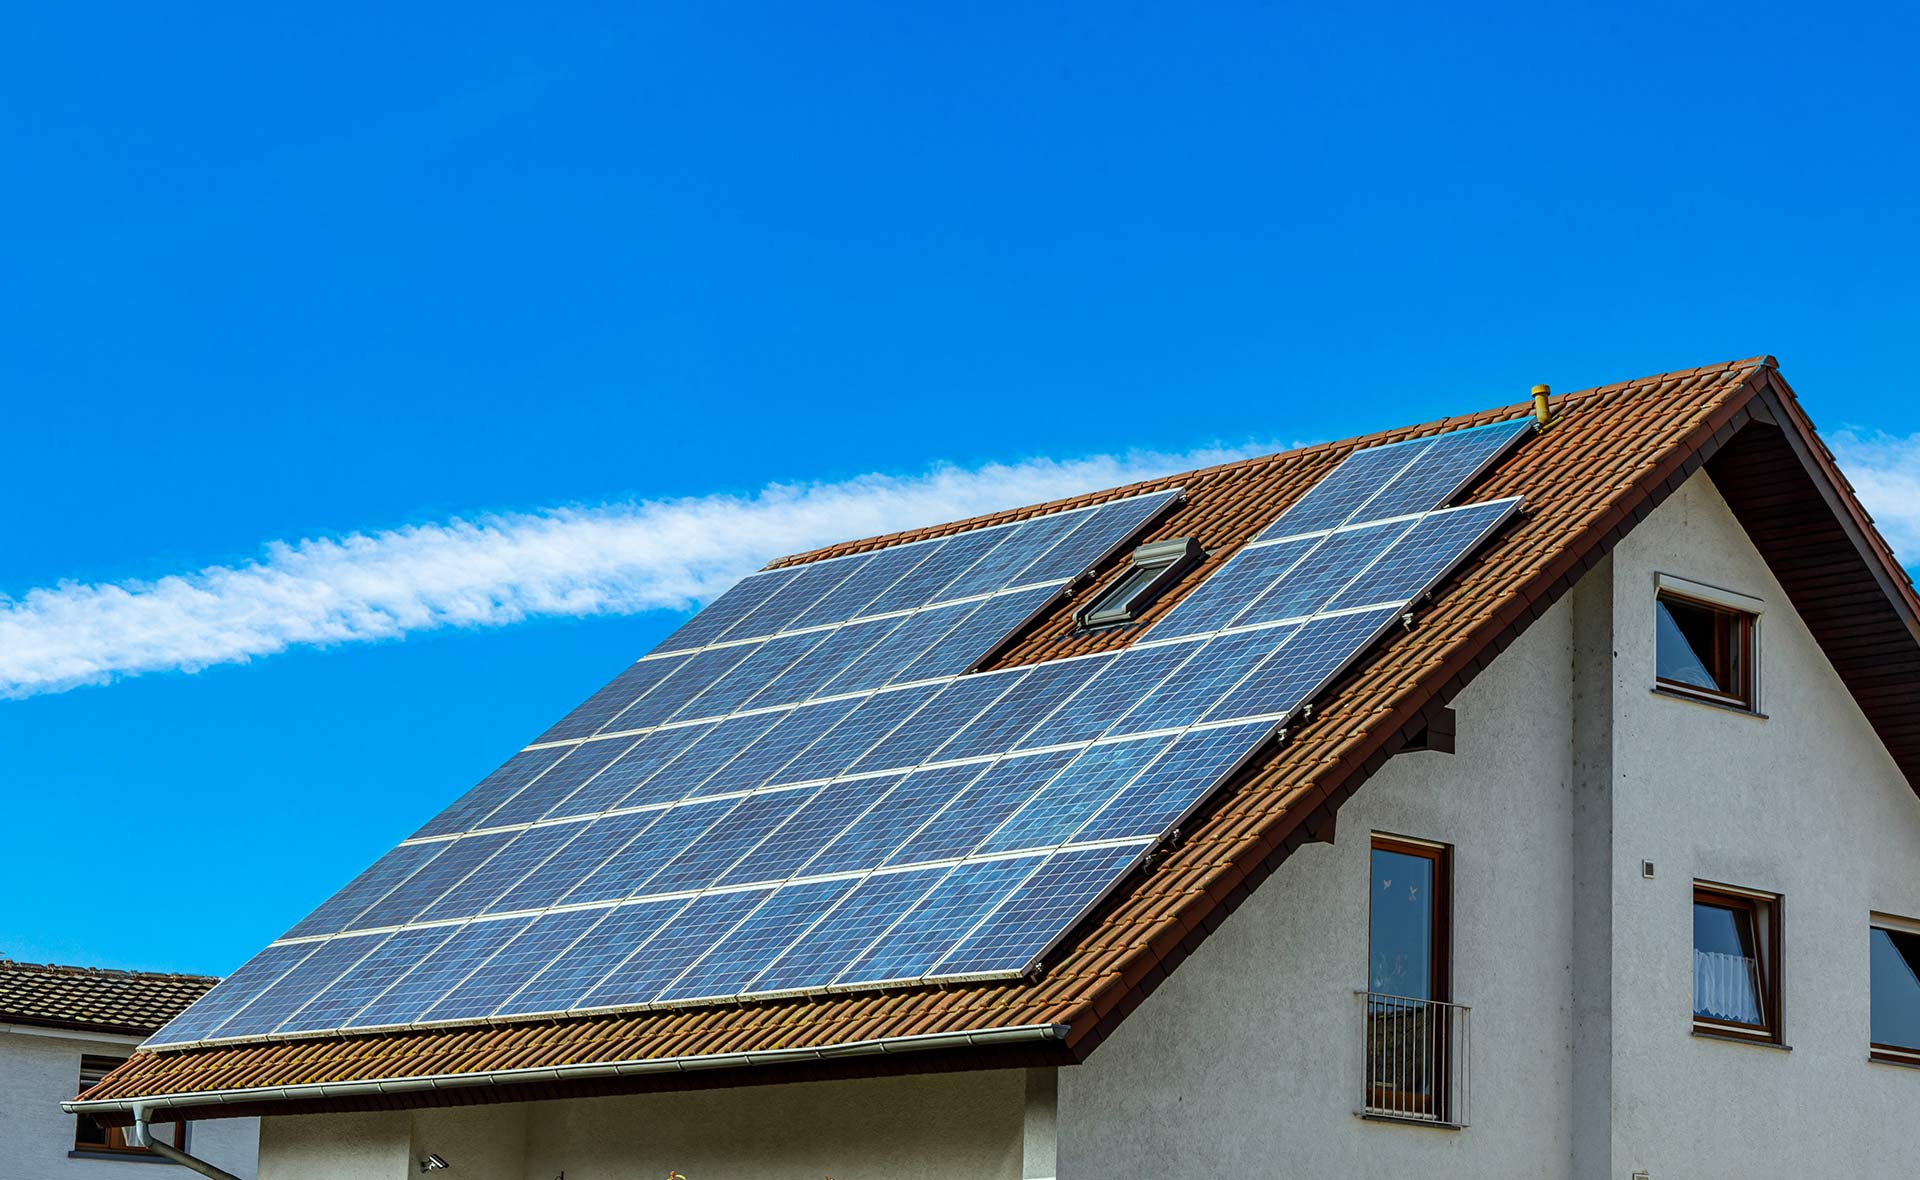 BBVA impulsa en España el autoconsumo fotovoltaico residencial